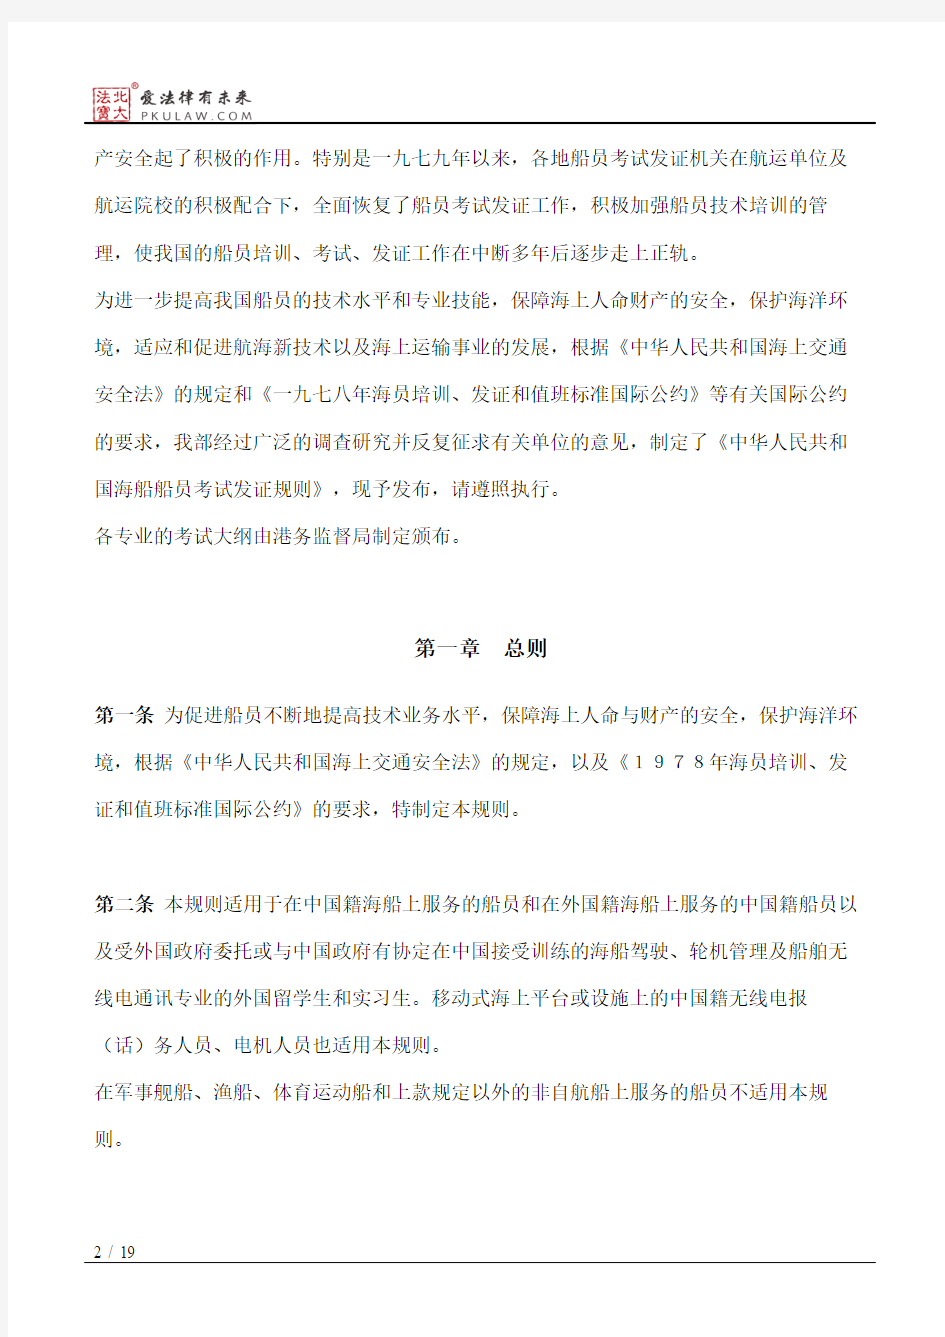 交通部关于颁发《中华人民共和国海船船员考试发证规则》的通知